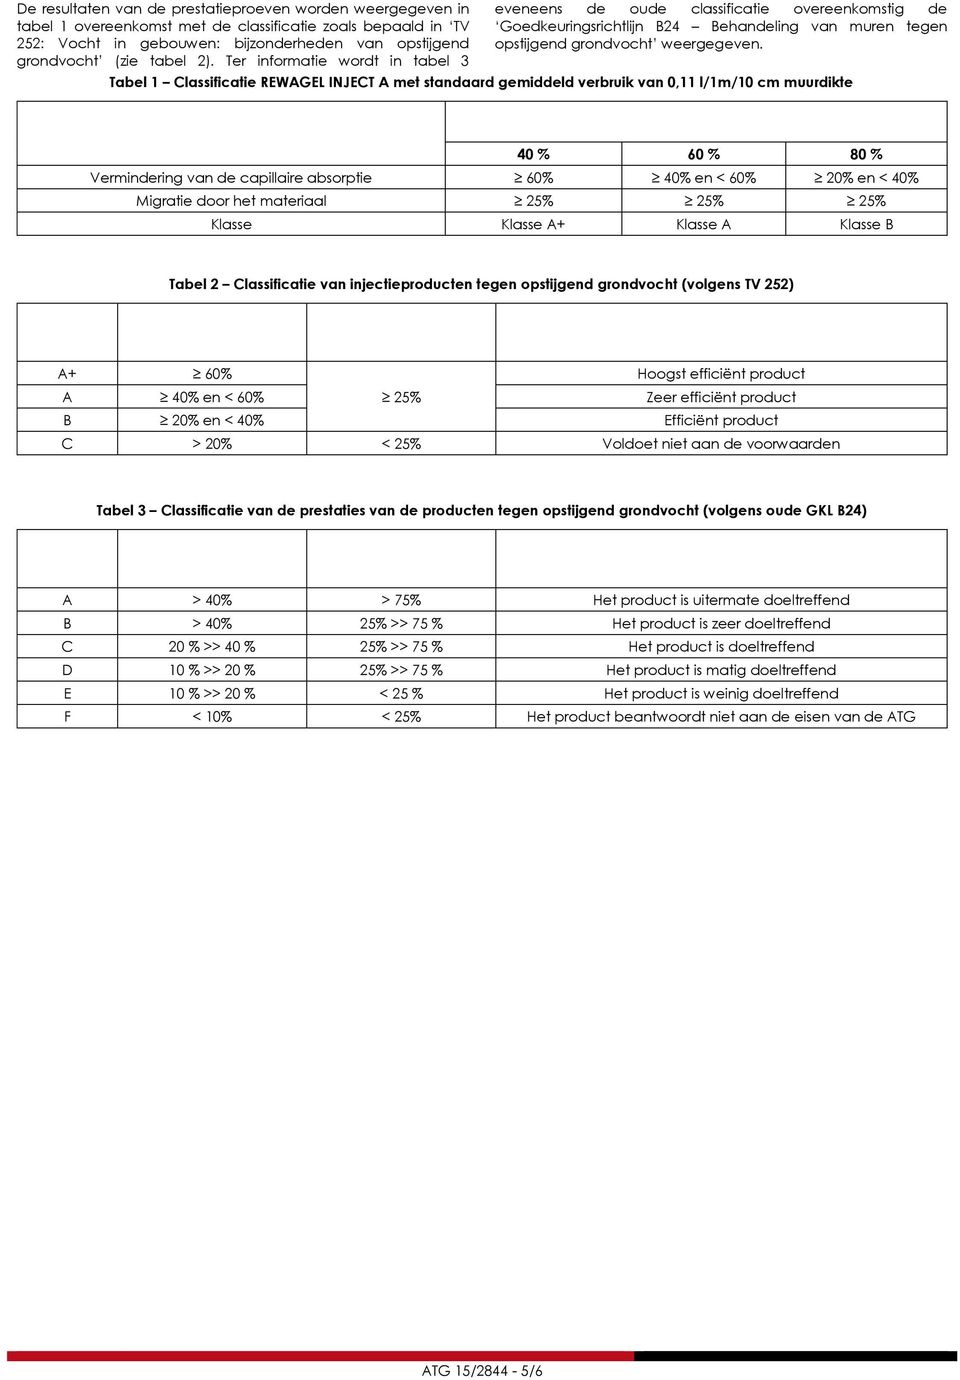 Tabel 1 Classificatie REWAGEL INJECT A met standaard gemiddeld verbruik van 0,11 l/1m/10 cm muurdikte Capaciteit van de initiële doeltreffendheid van het product REWAGEL INJECT A met standaard